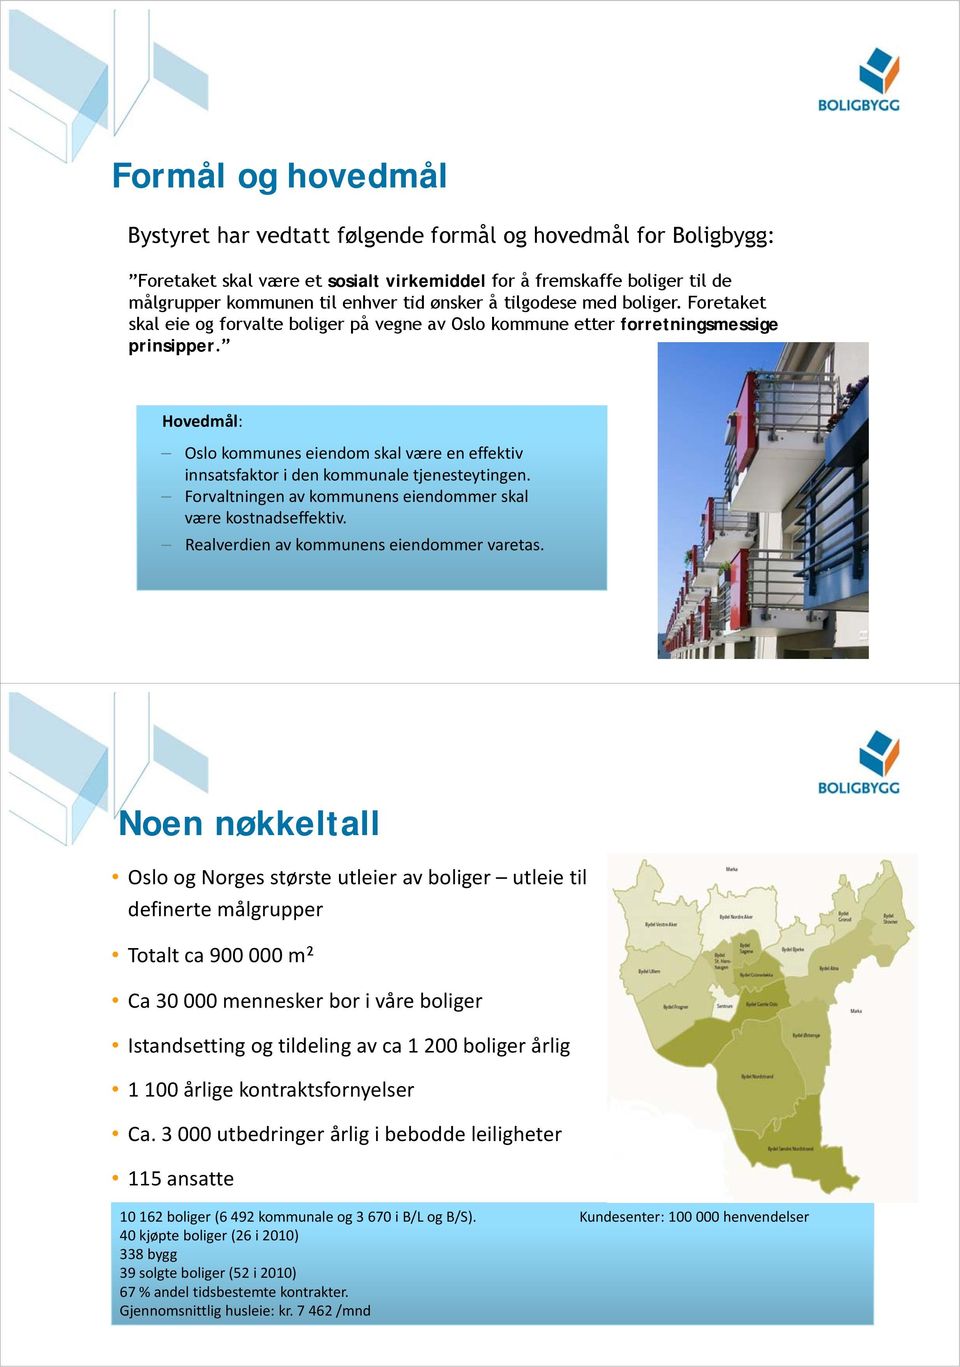 Hovedmål: Oslo kommunes eiendom skal være en effektiv innsatsfaktor i den kommunale tjenesteytingen. Forvaltningen av kommunens eiendommer skal være kostnadseffektiv.